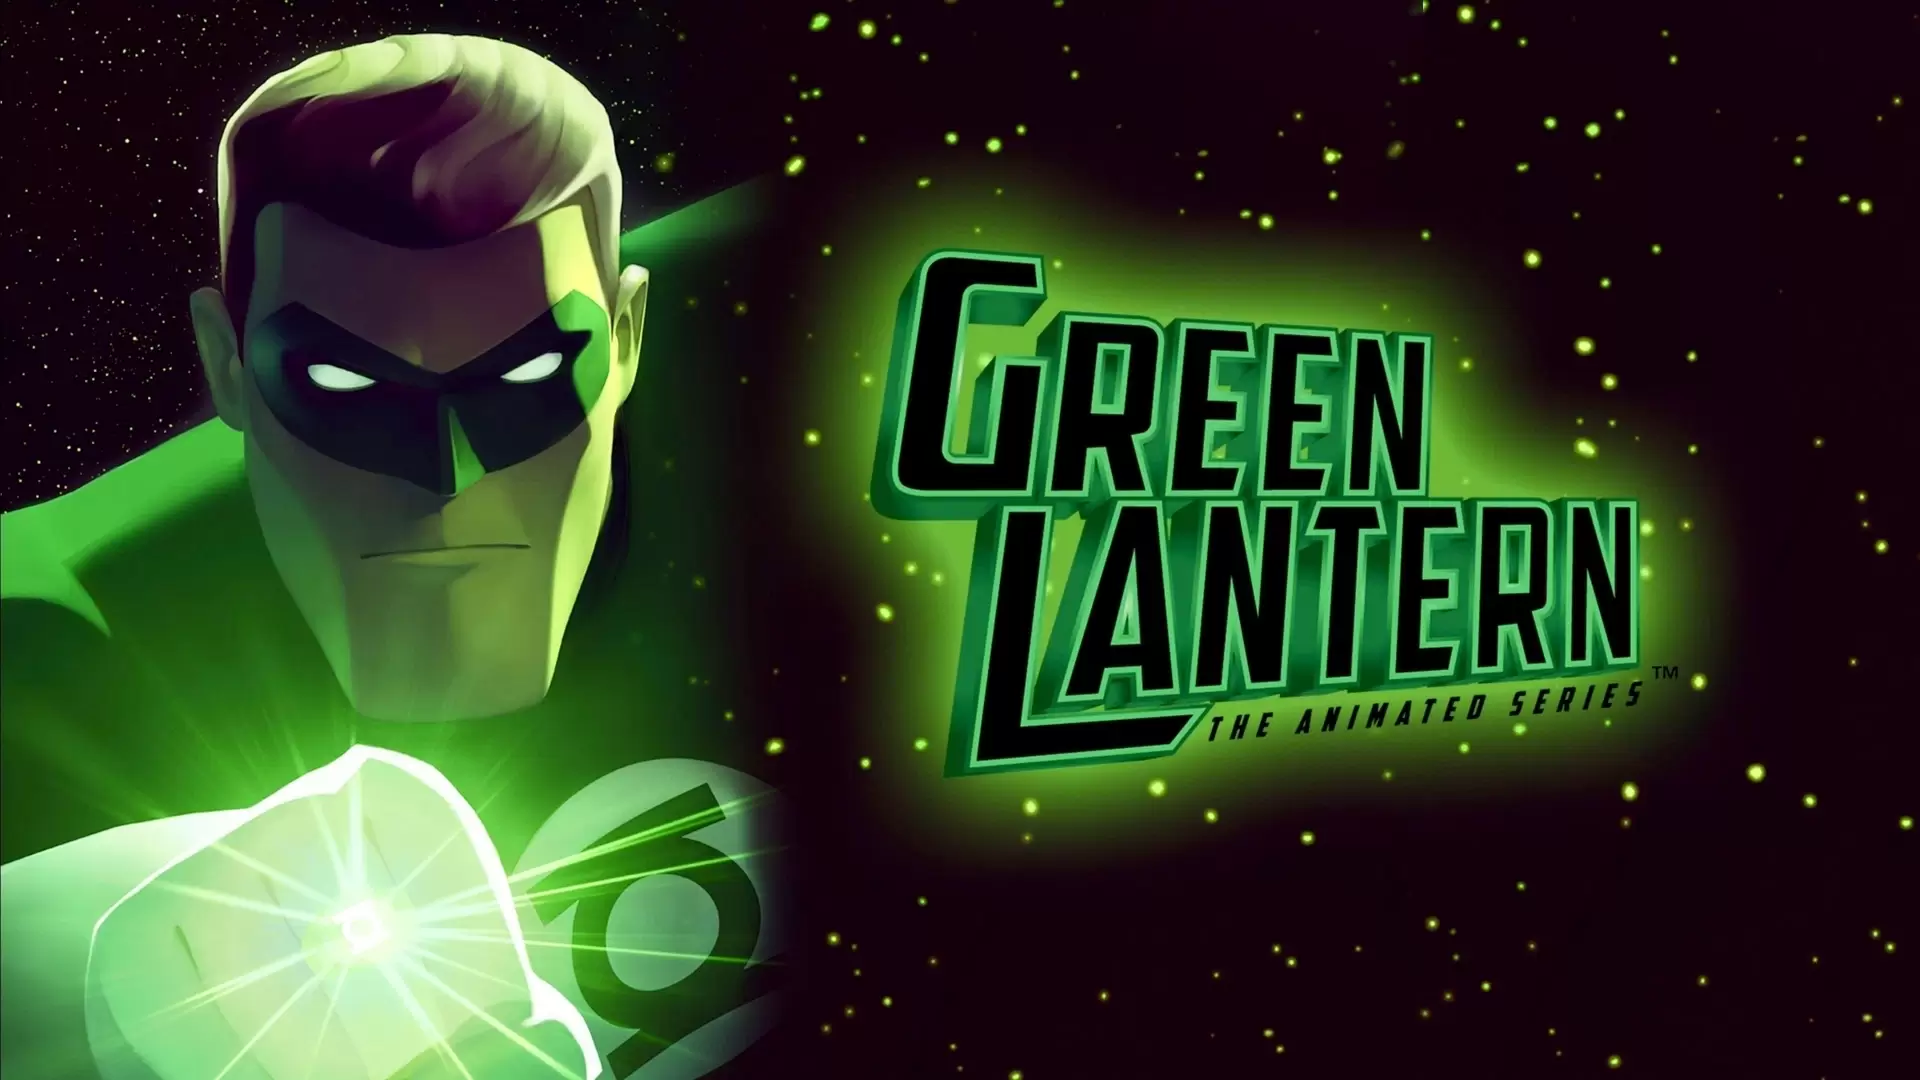 دانلود انیمیشن Green Lantern: The Animated Series 2011 (فانوس سبز) با زیرنویس فارسی